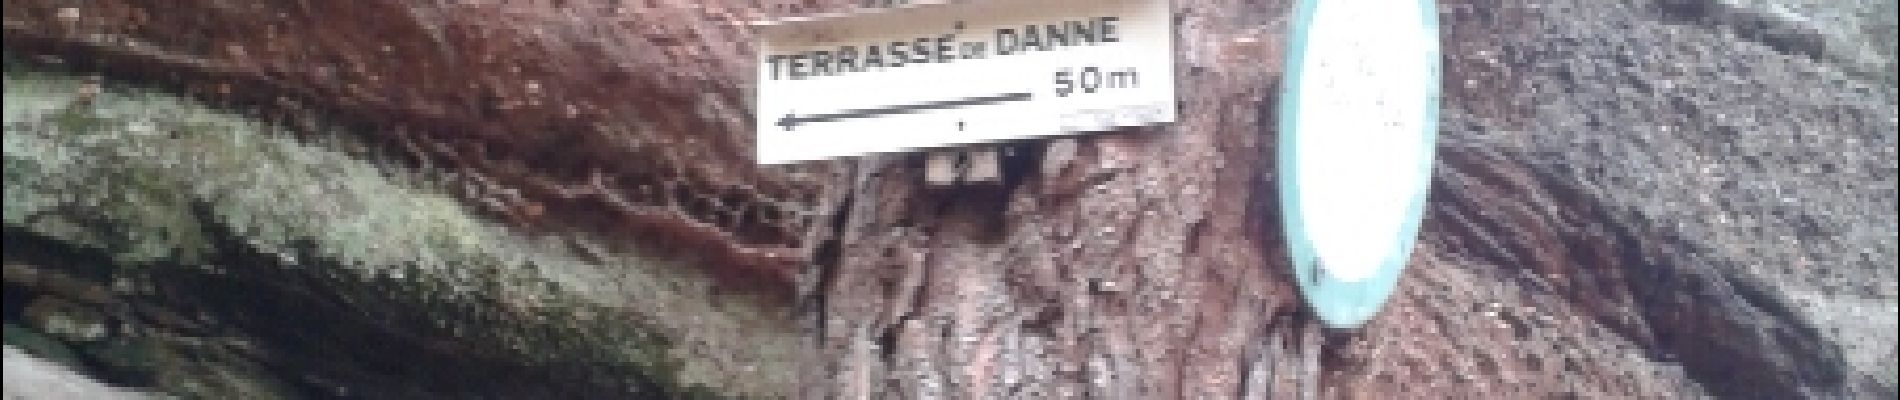 Punto di interesse Danne-et-Quatre-Vents - terrasse de danne - Photo